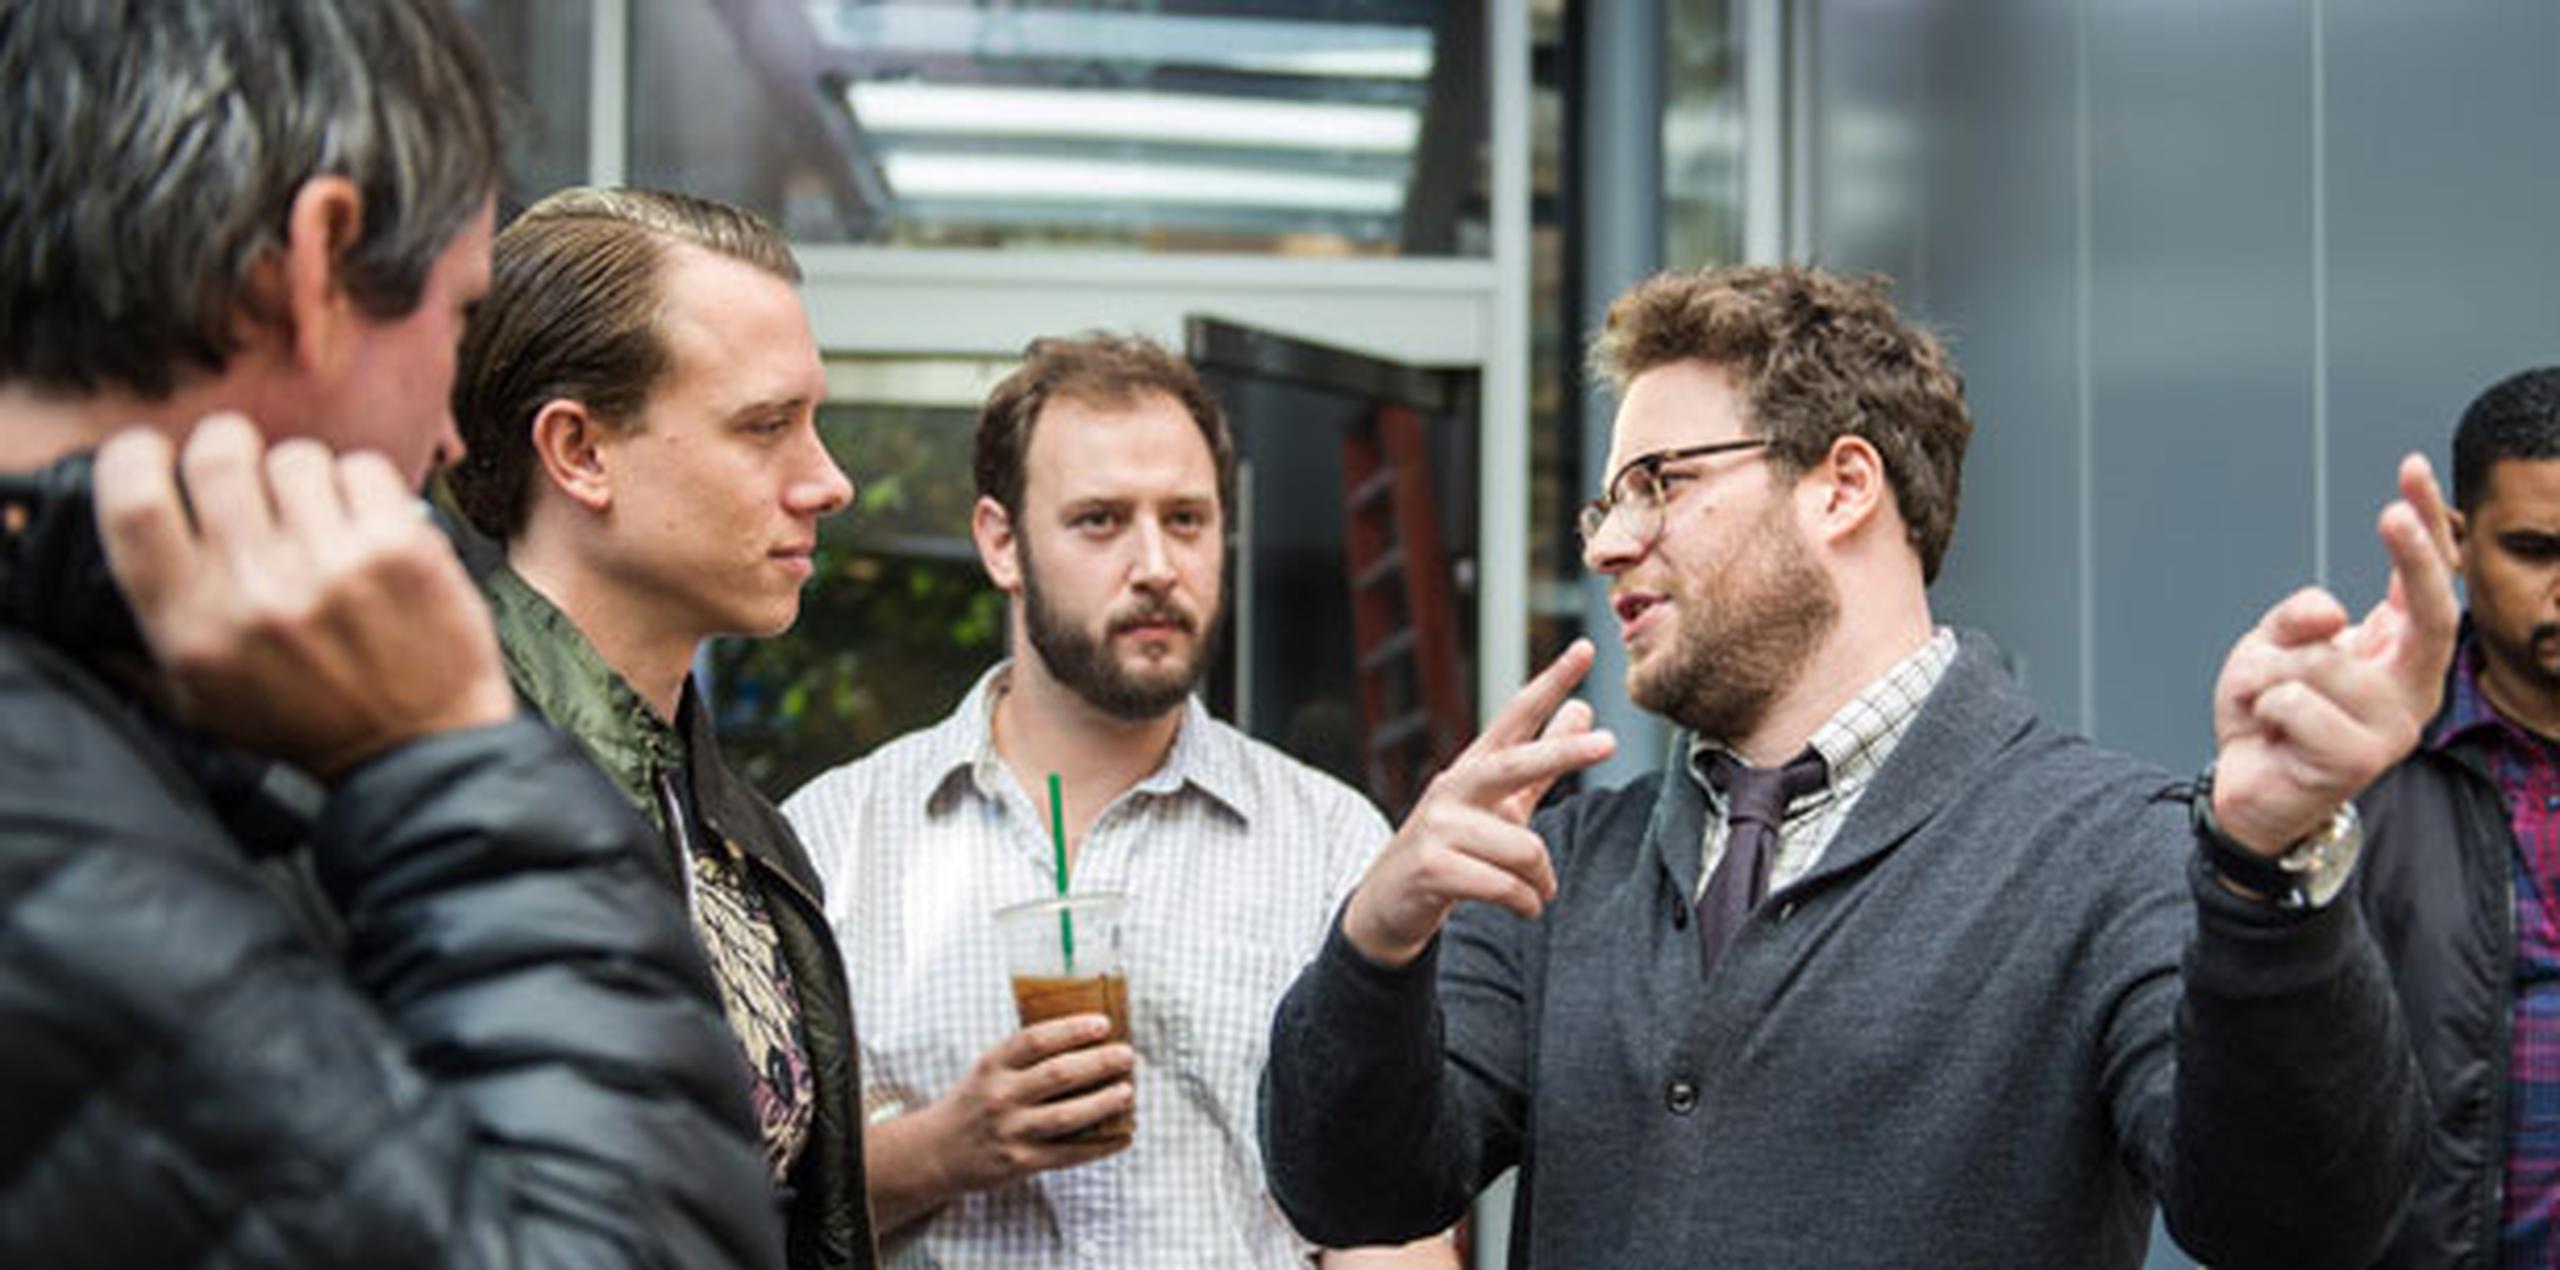 Desde la izquierda Jonathan Watson, DP Brandon Trost, Evan Goldberg, y Seth Rogen en el set de la película "The Interview". (Prensa Asociada)